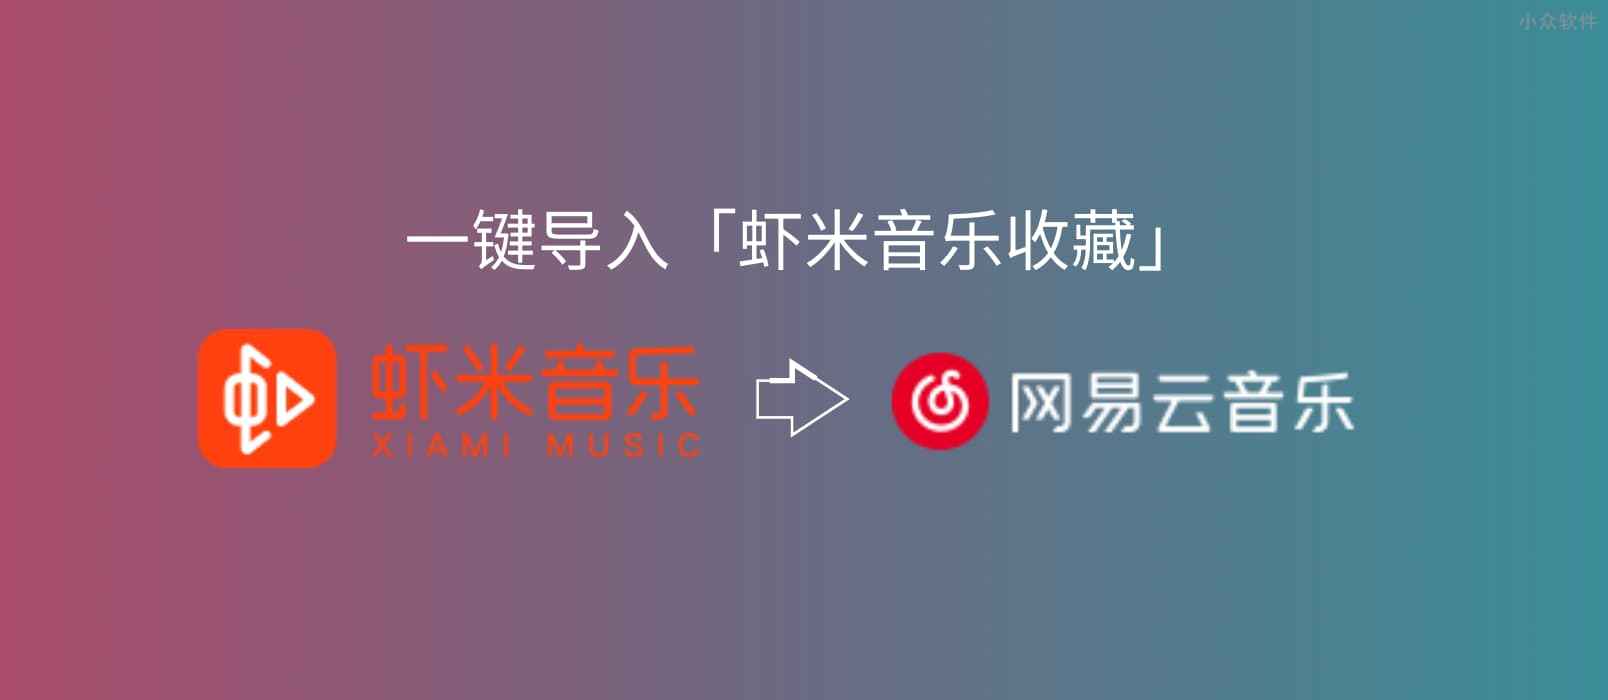 网易云音乐、QQ 音乐均已推出一键导入「虾米音乐收藏」服务 1